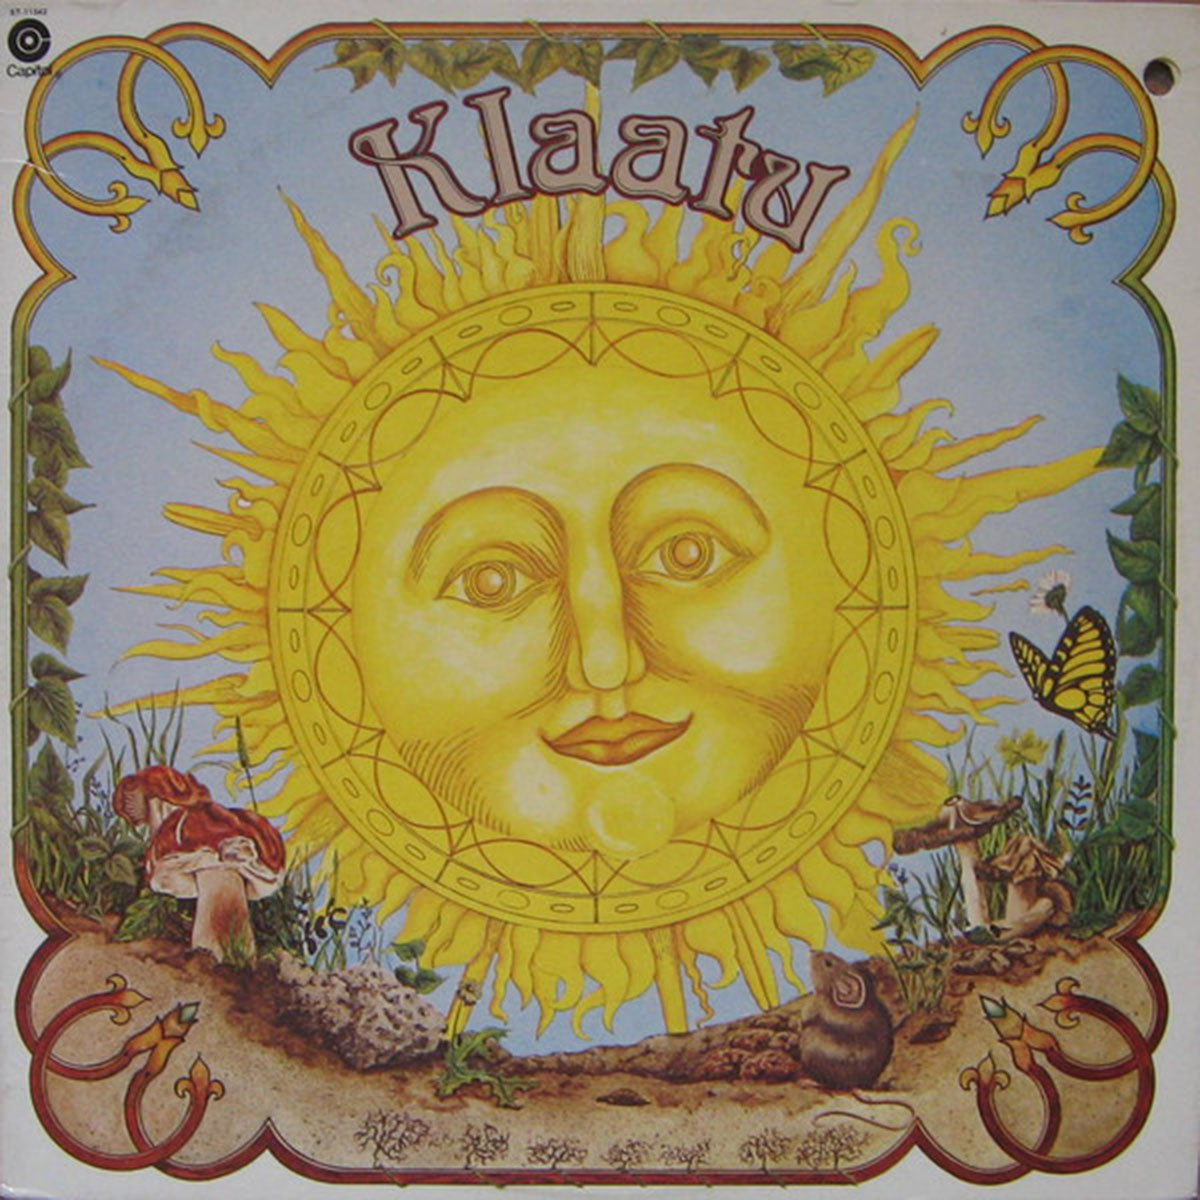 Klaatu – Klaatu - US Pressing - 1976